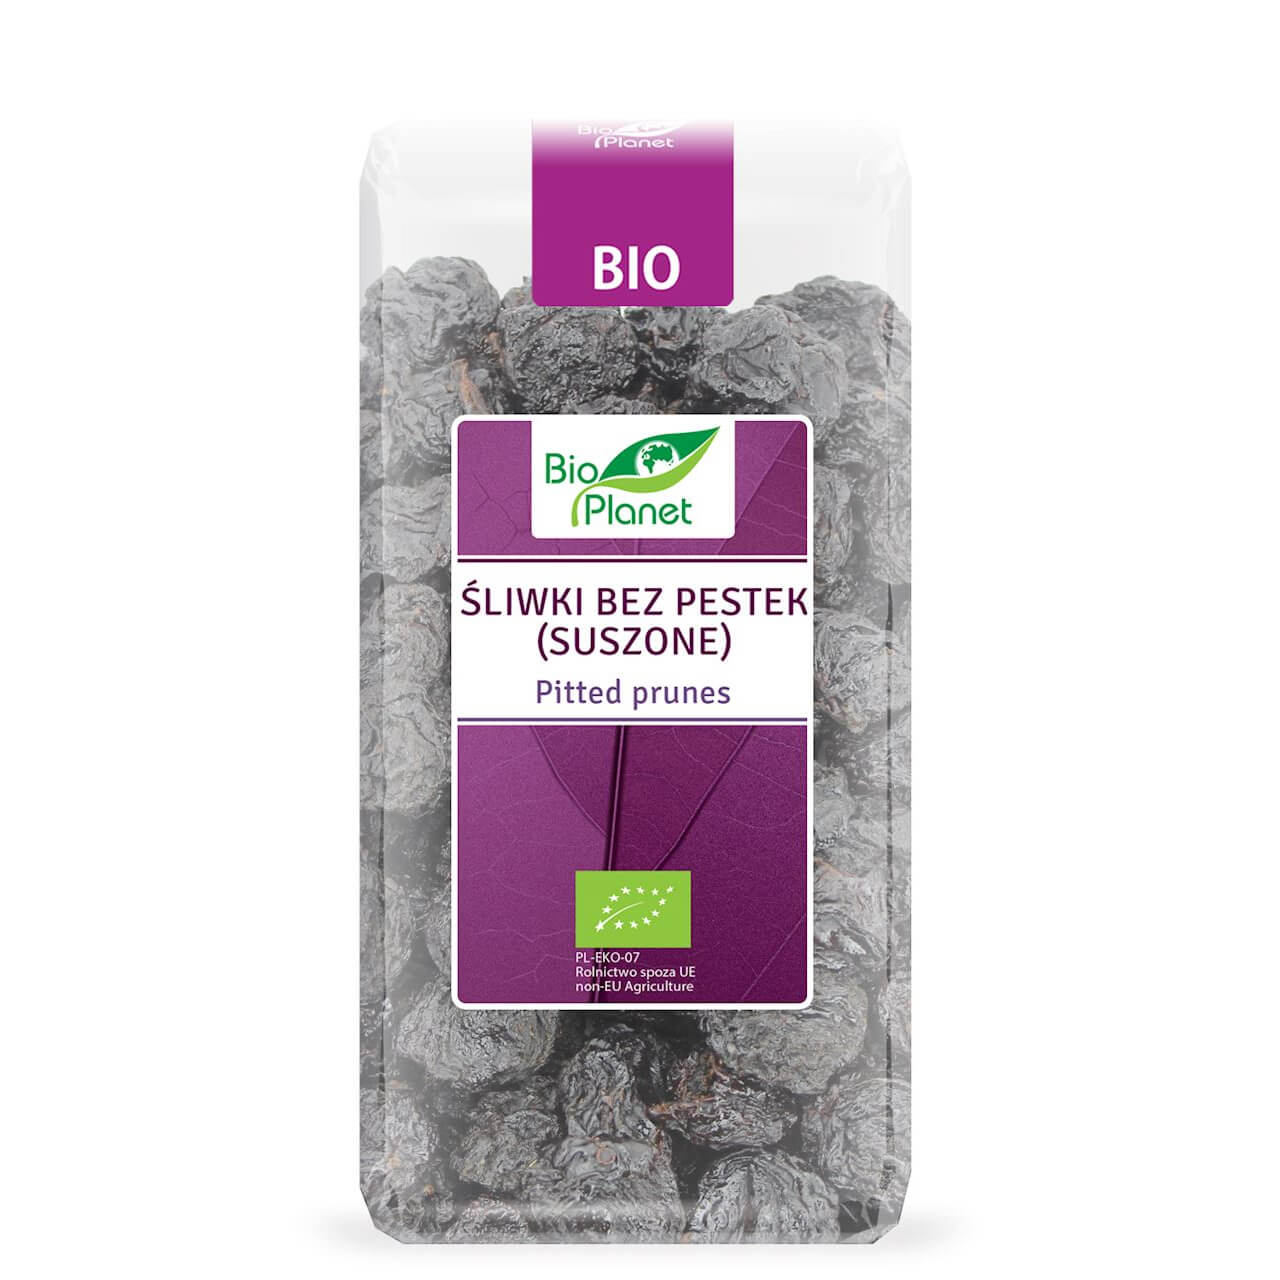 Śliwki bez pestek suszone BIO 400 g - Bio Planet